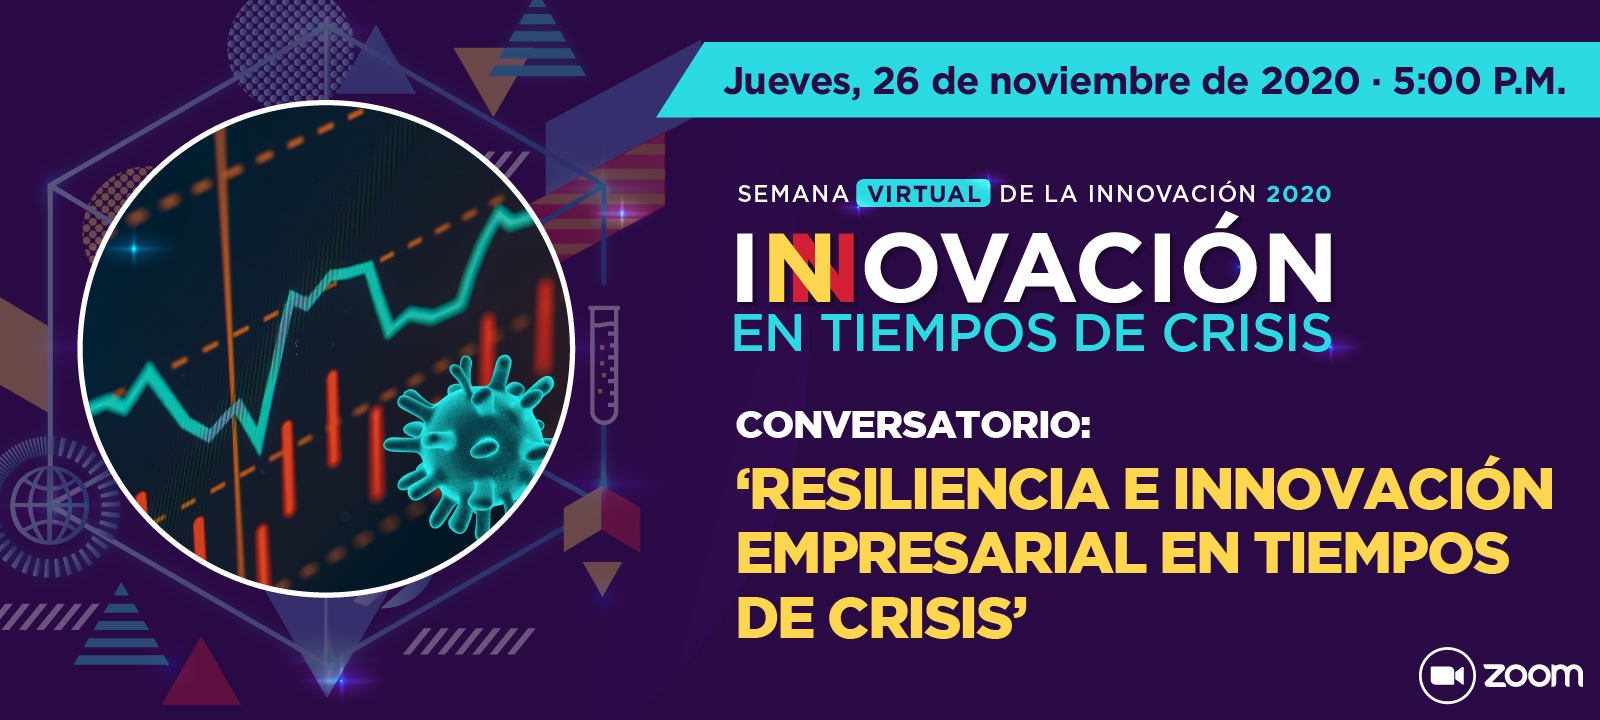 Comversatorio: 'Resiliencia e innovación empresarial en tiempos de crisis'